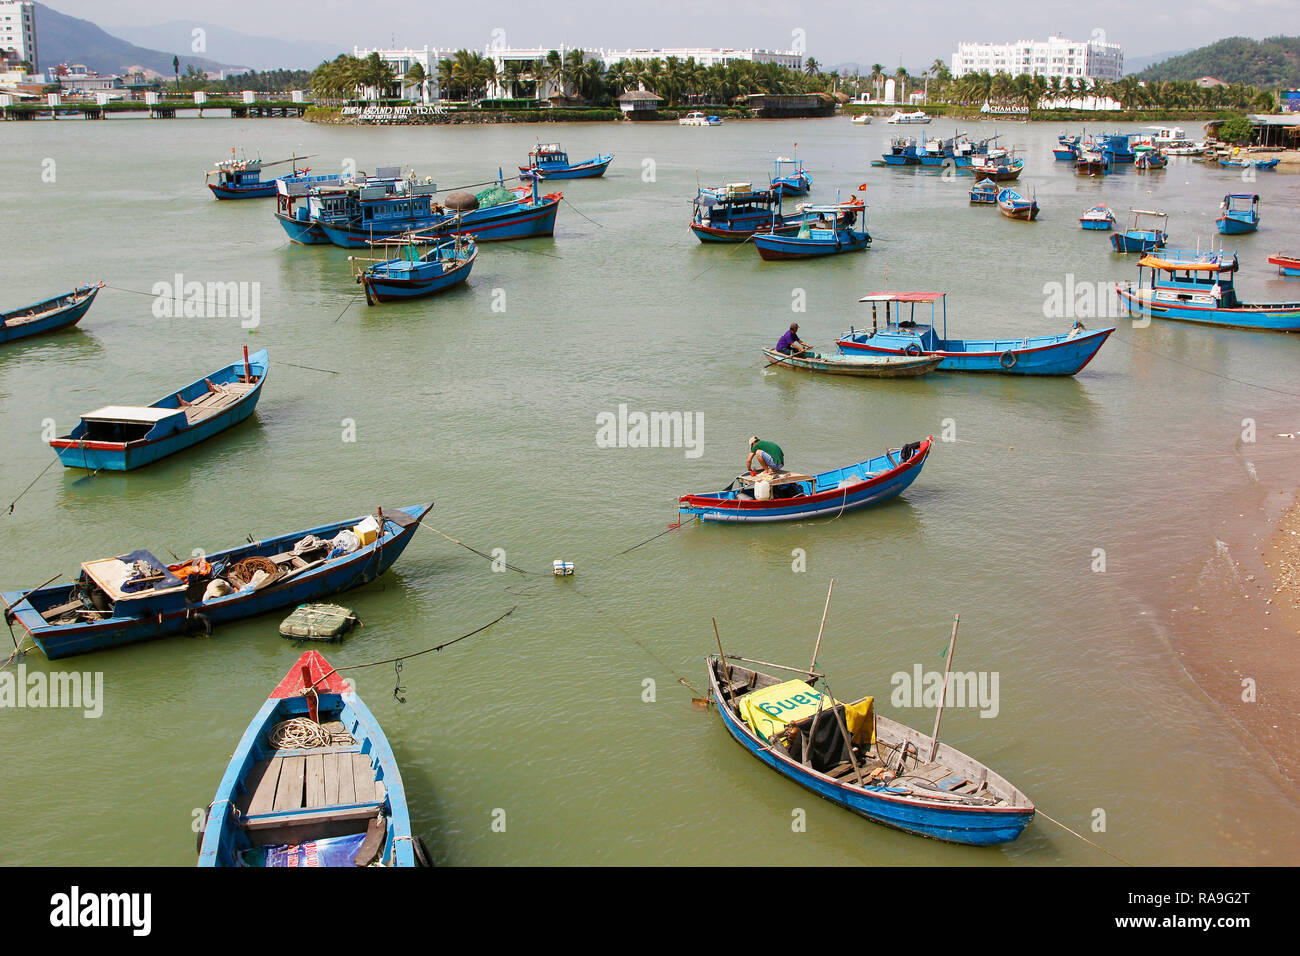 Nha Trang, a coastal city, capital of Khanh Hoa Province, on the South Central Coast of Vietnam, February 6, 2018. (CTK Photo/Jan Rychetsky) Stock Photo